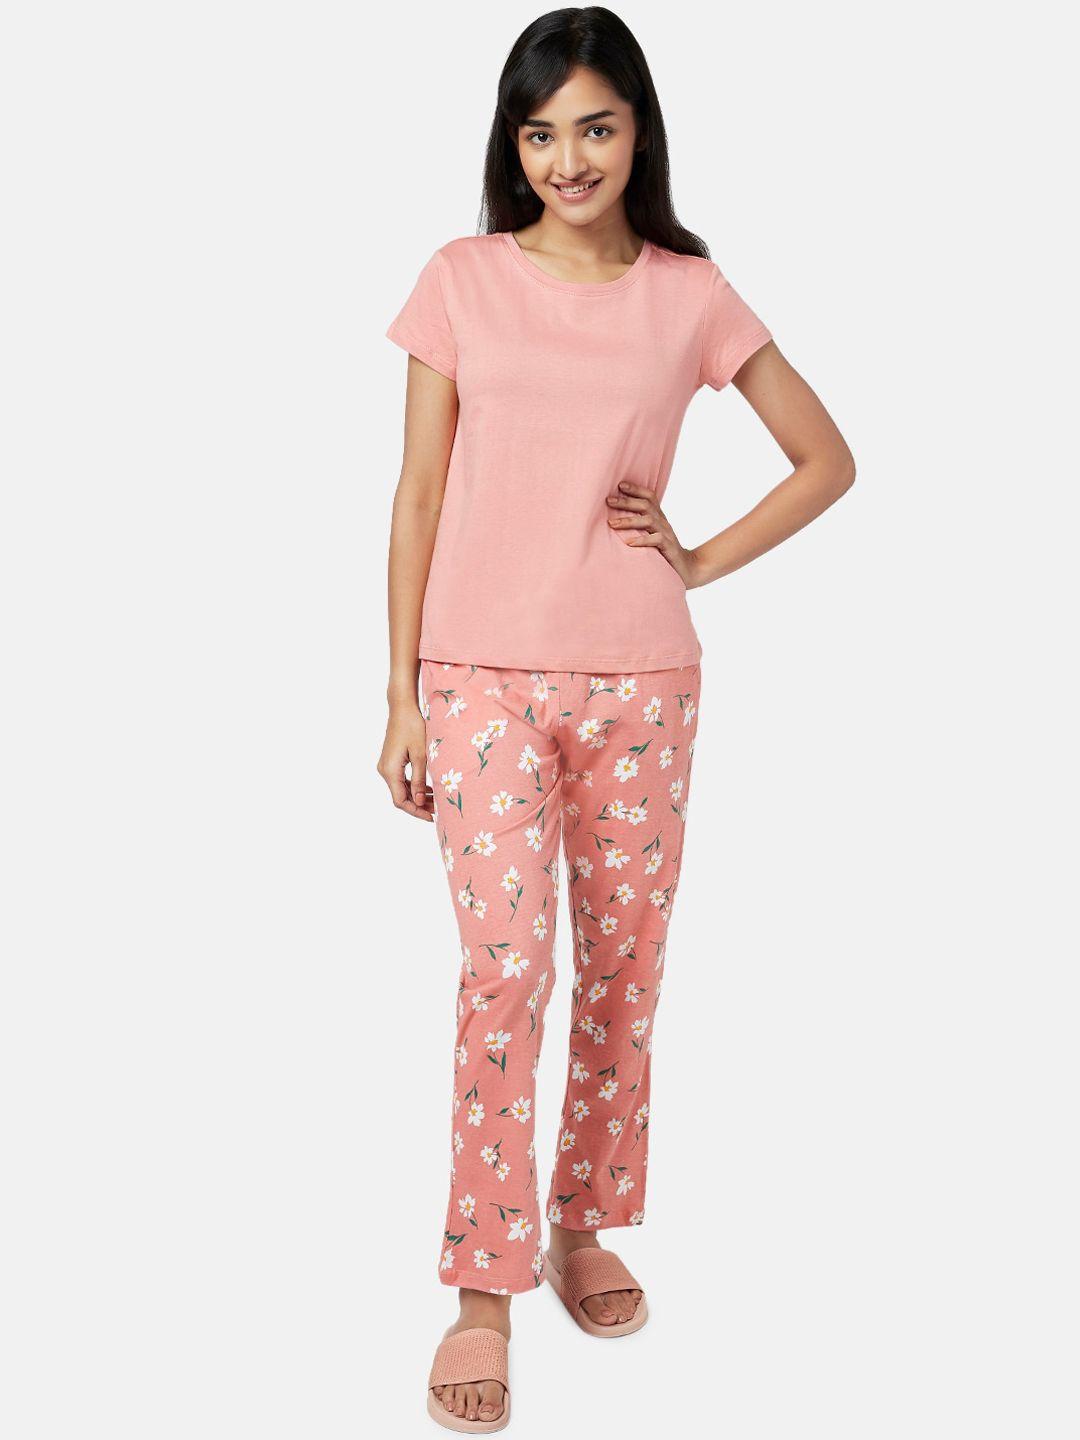 yu by pantaloons women pink & white night suit